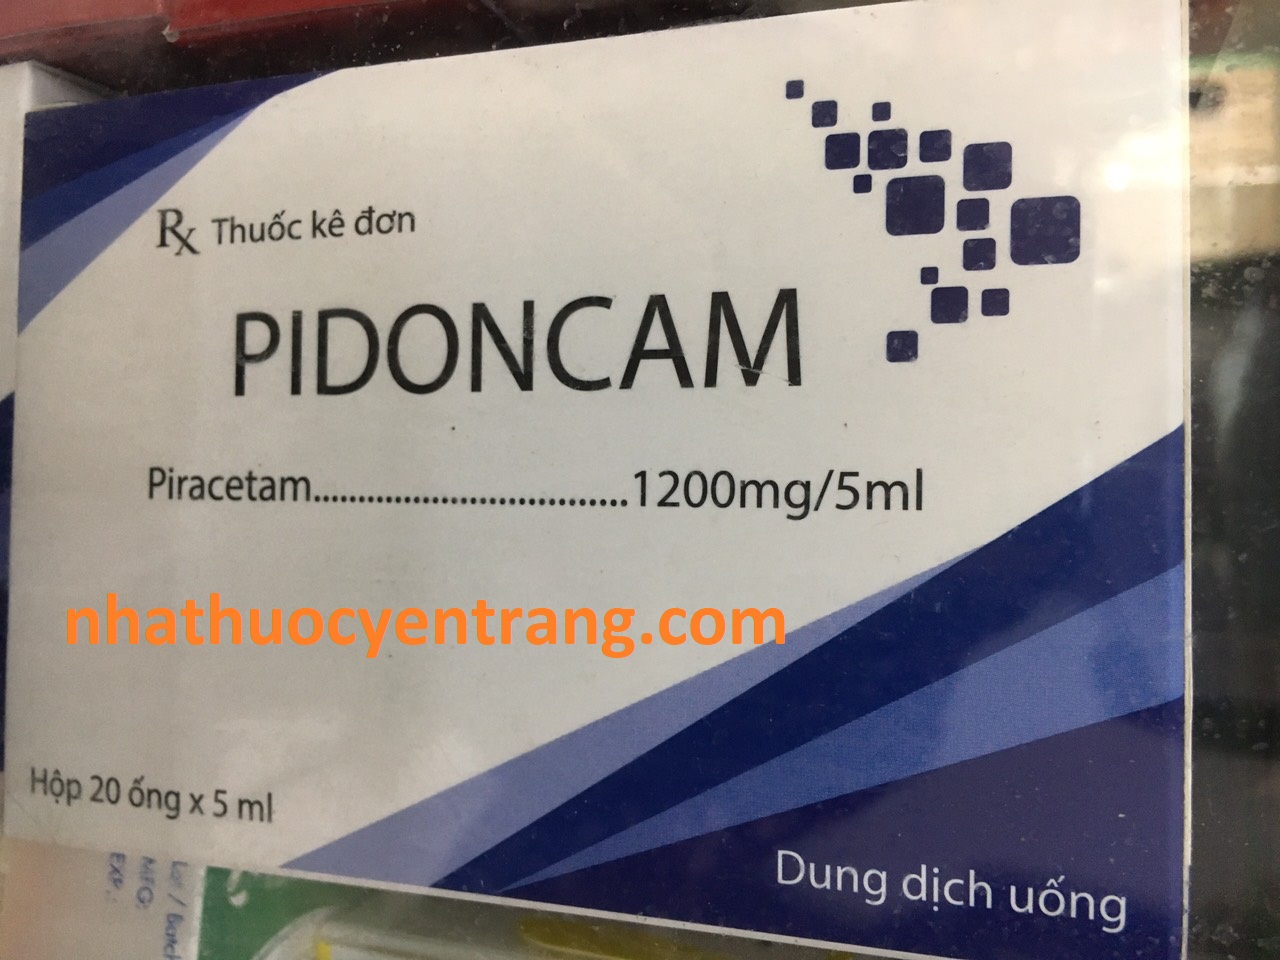 Pidoncam 1200mg/5ml (20 ống x 5ml)